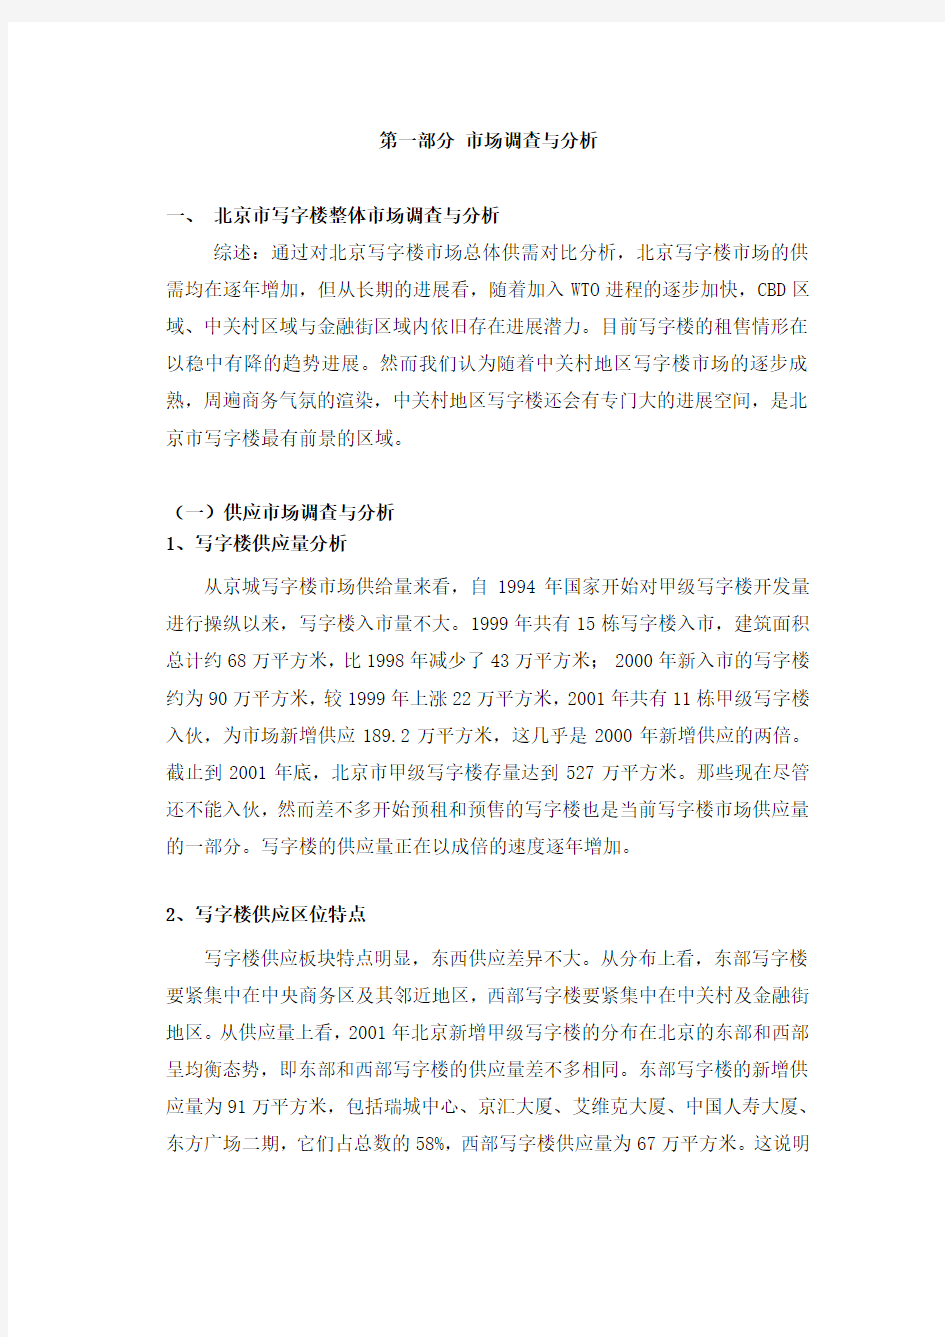 北京市写字楼整体市场调查与分析